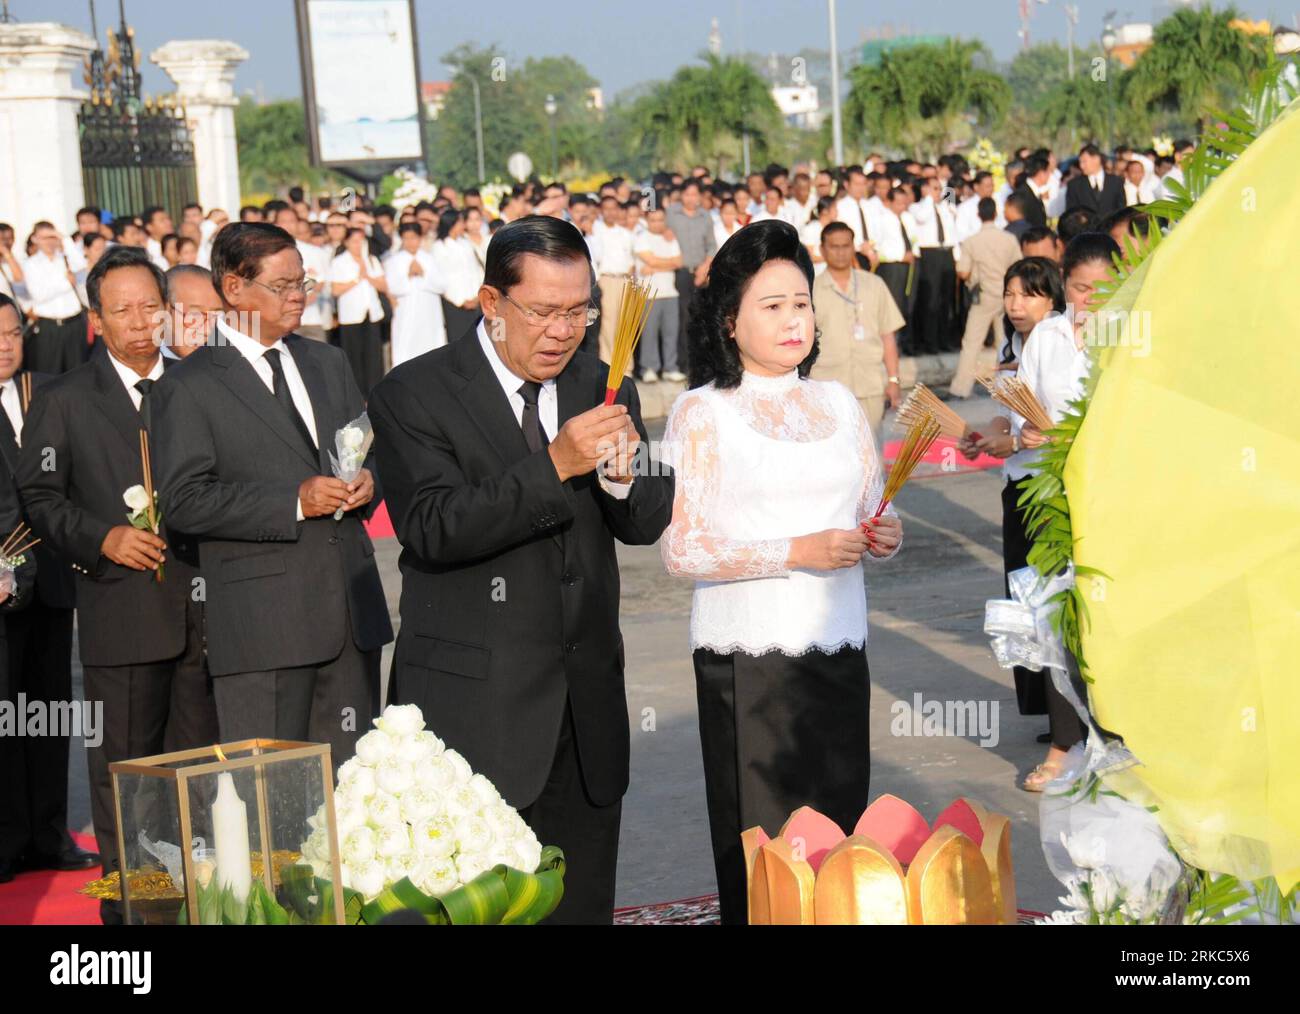 (101125) -- PHNOM PENH, 25 novembre 2010 (Xinhua) -- le Premier ministre cambodgien Hun Sen (à gauche) et son épouse Bun Rany Hun Sen (à droite) assistent à la cérémonie de deuil des victimes de la ruée lors de la journée nationale de deuil à Phnom Penh le 25 novembre 2010. La cérémonie a eu lieu le 25 novembre pour pleurer les personnes qui sont mortes dans la ruée qui a eu lieu à Phnom Penh le 22 novembre. (Xinhua/Lei Baisong) (zyw) CAMBODGE-PHNOM PENH-STAMPEDE-CÉRÉMONIE DE DEUIL-HUN SEN PUBLICATIONxNOTxINxCHN Banque D'Images